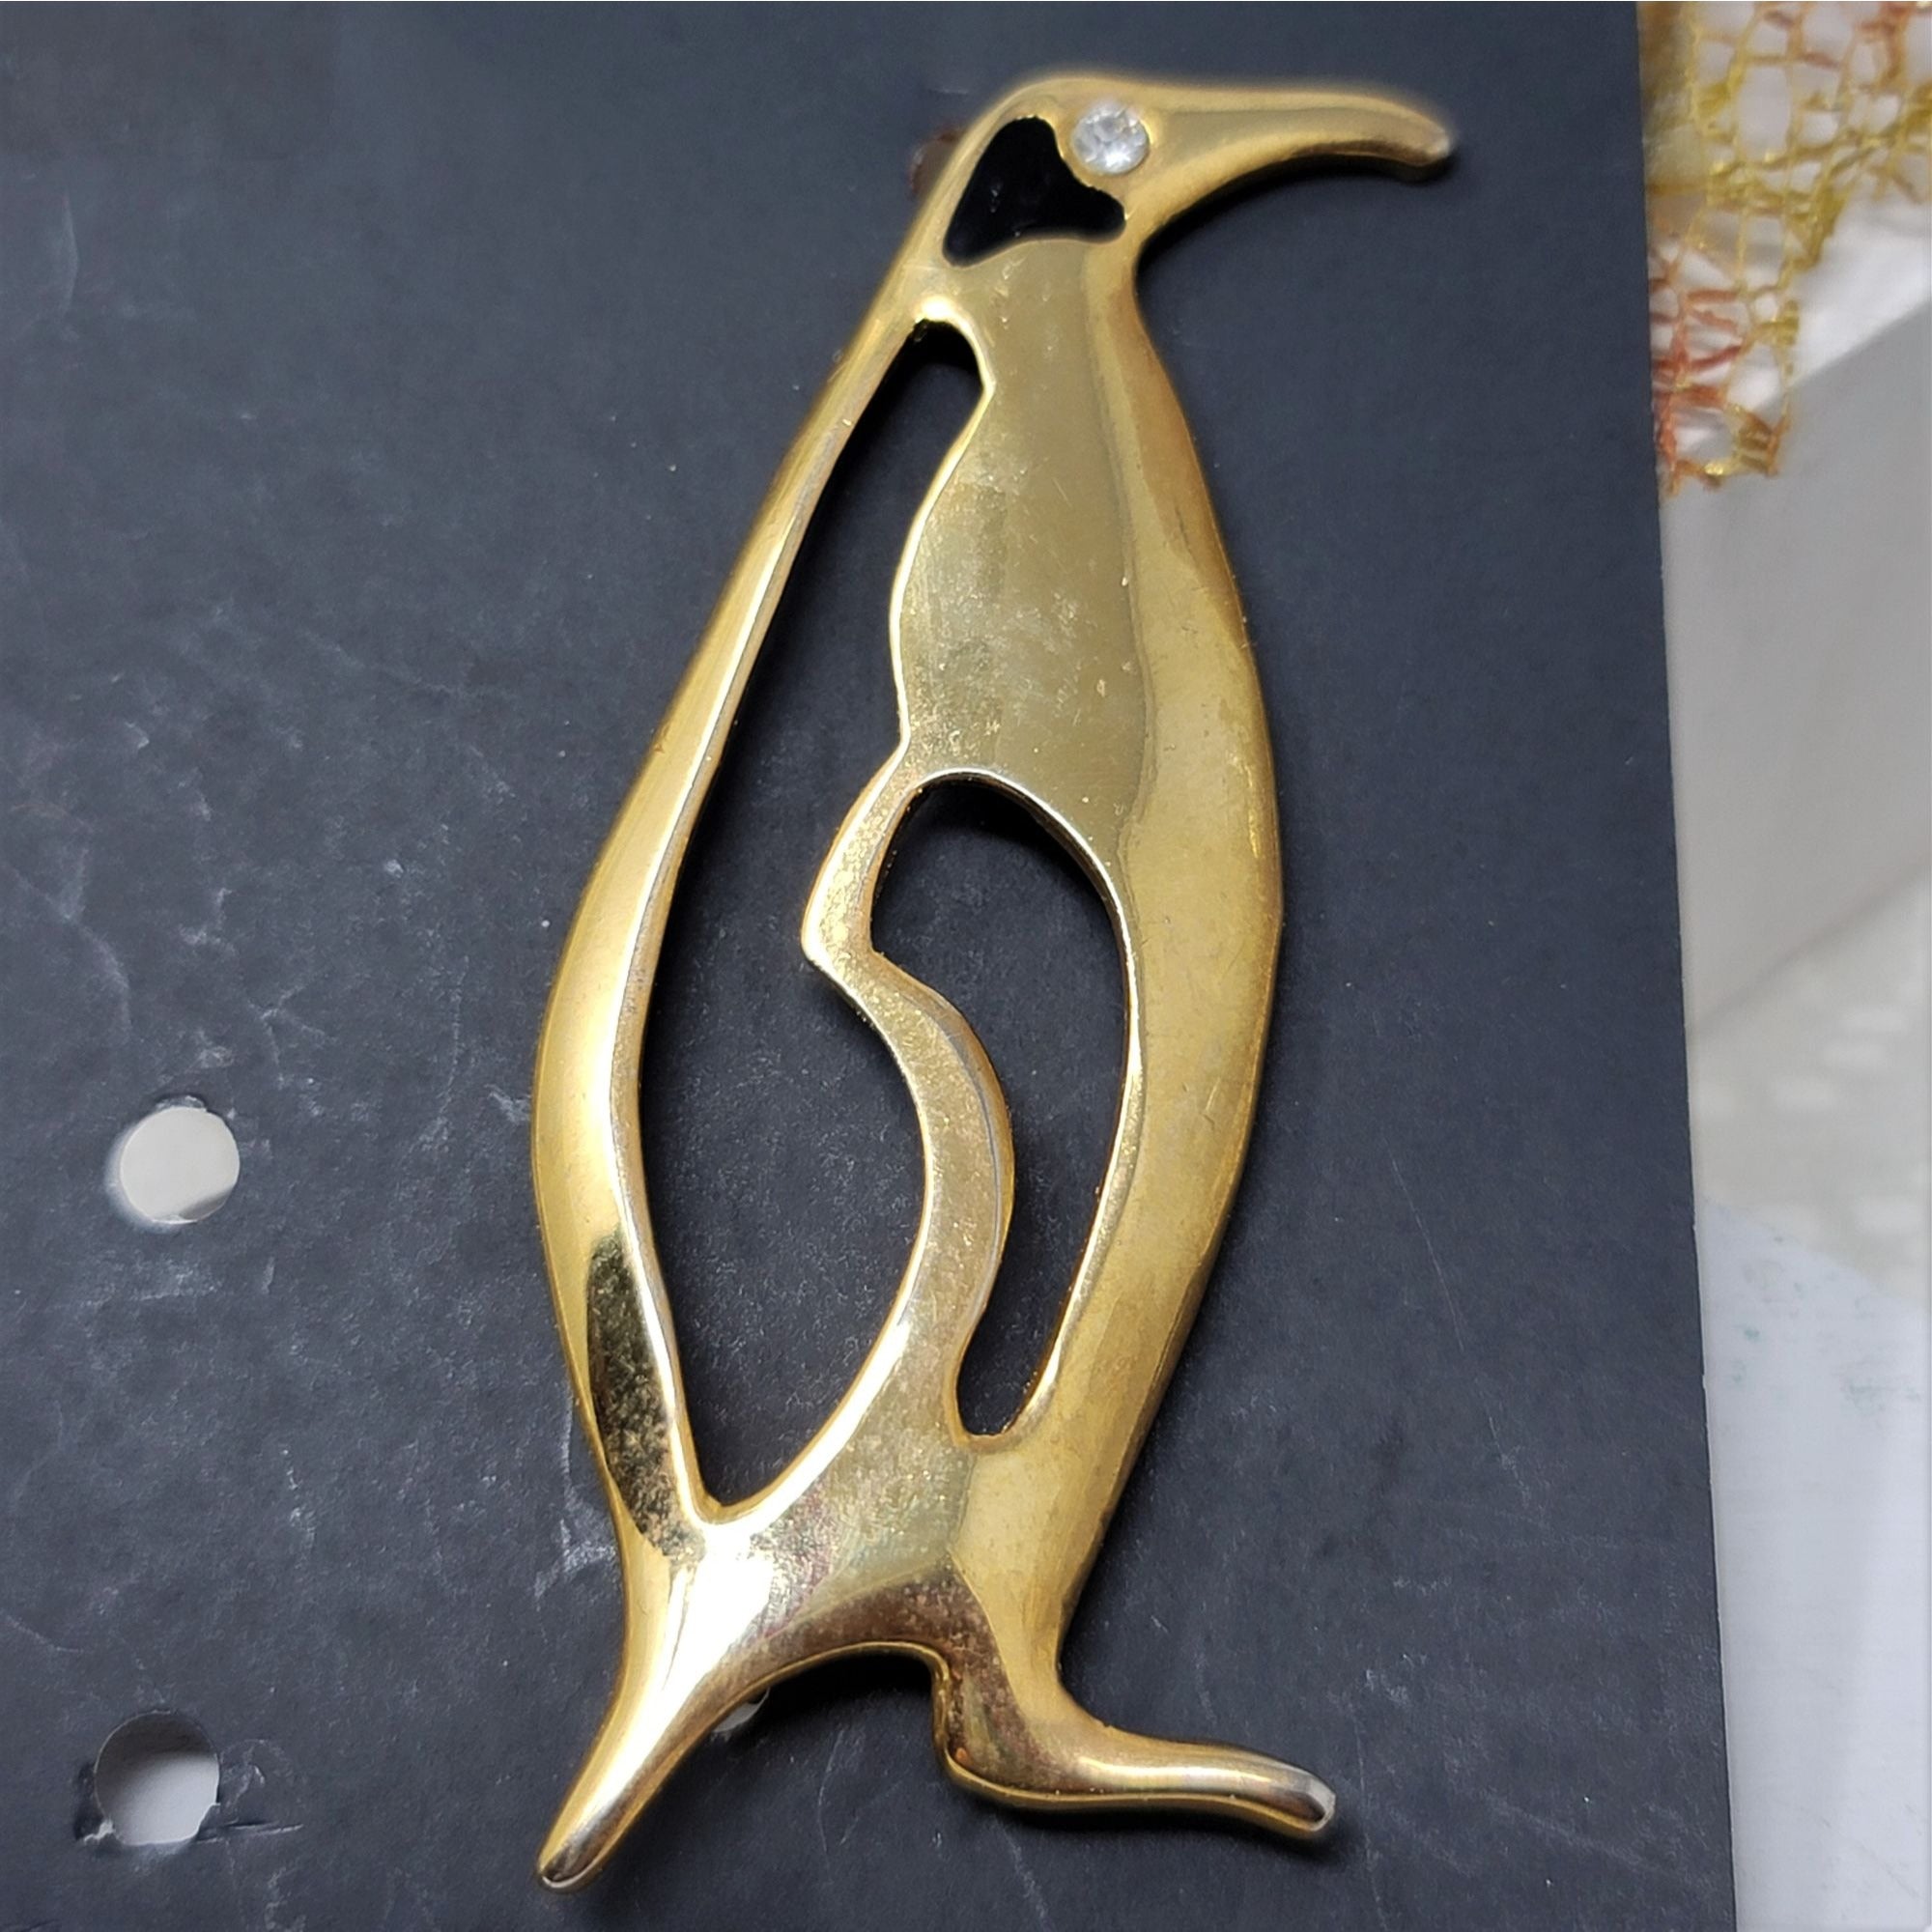 Unique Penguin Pin Brooch Cut Out Design Goldtone